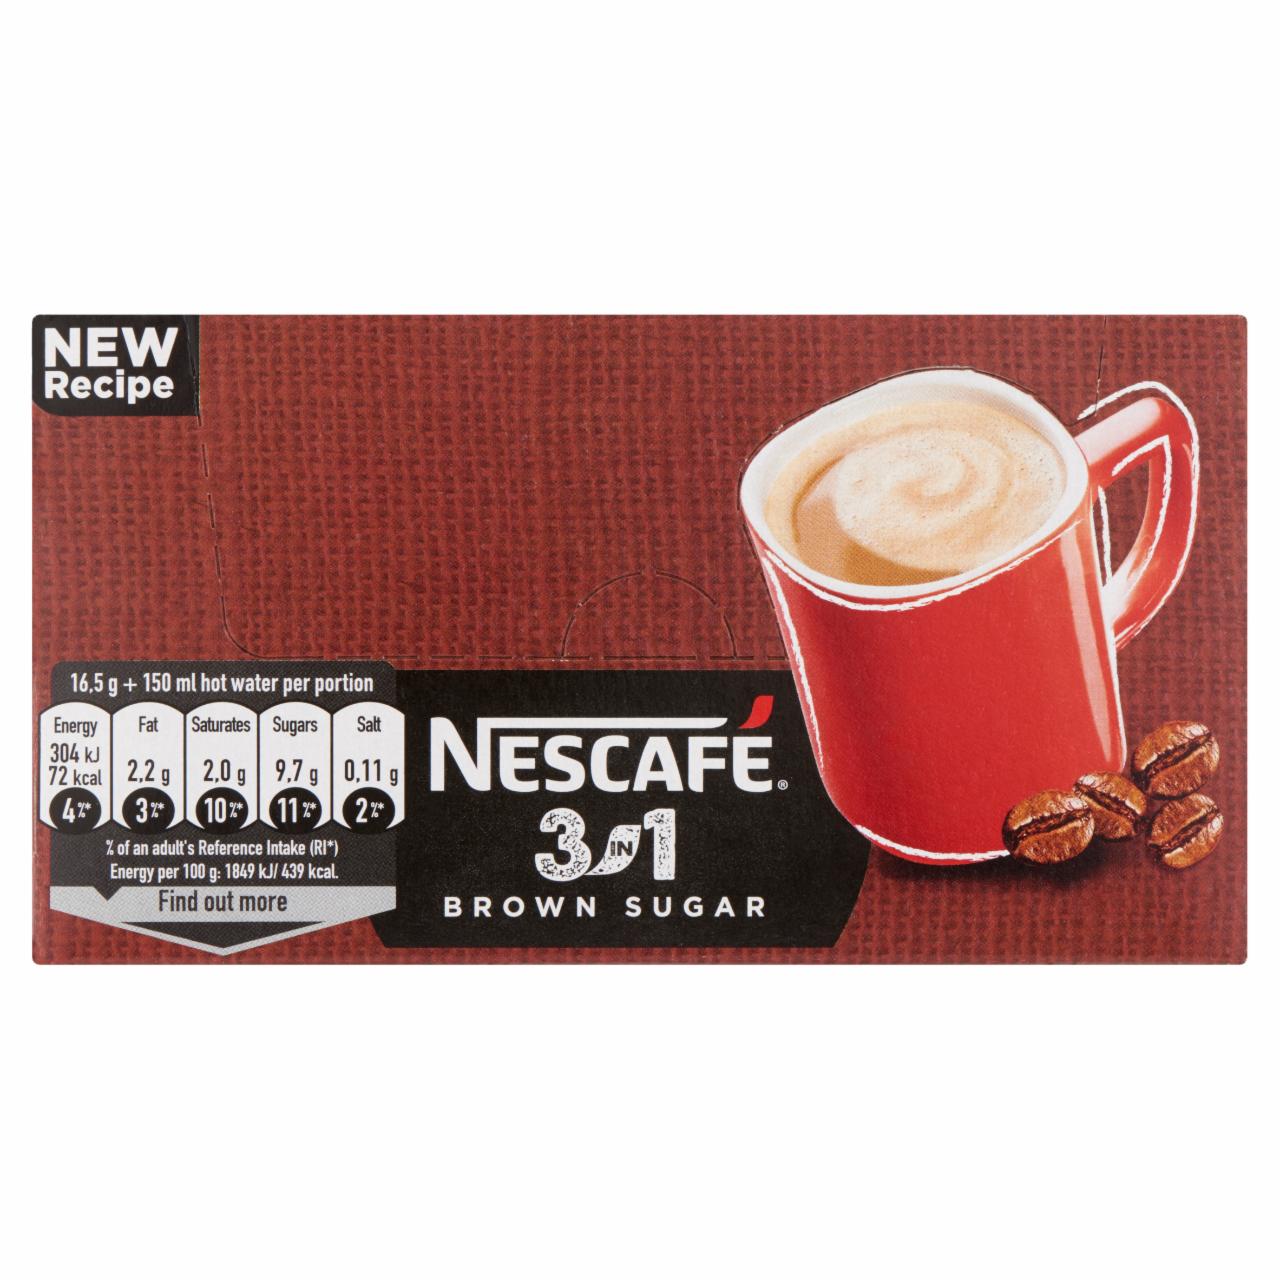 Képek - Nescafé 3in1 Brown Sugar azonnal oldódó kávéspecialitás barnacukorral 28 x 16,5 g (462 g)